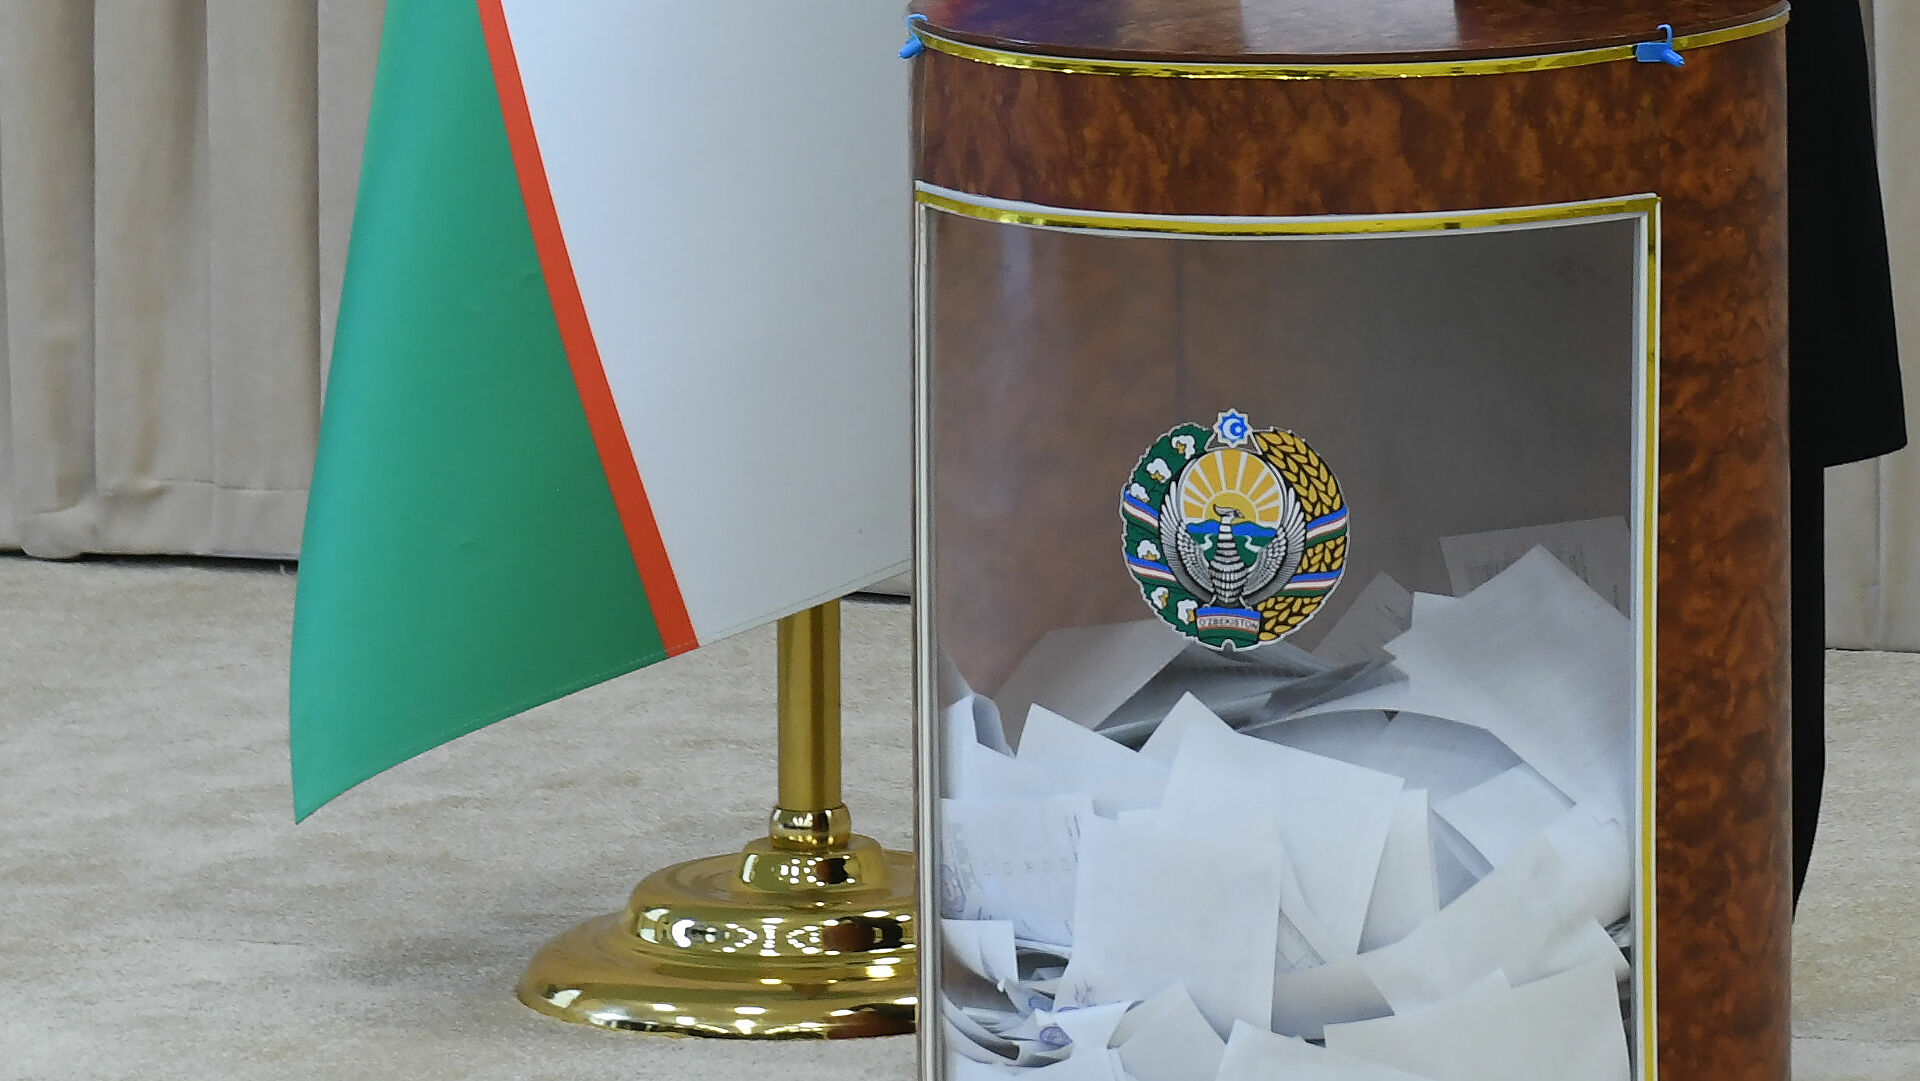 Опрос «ИФ»: 88,9% узбекистанцев готовы принять участие в выборах президента. 8,2% опрошенных не знали о том, что они состоятся